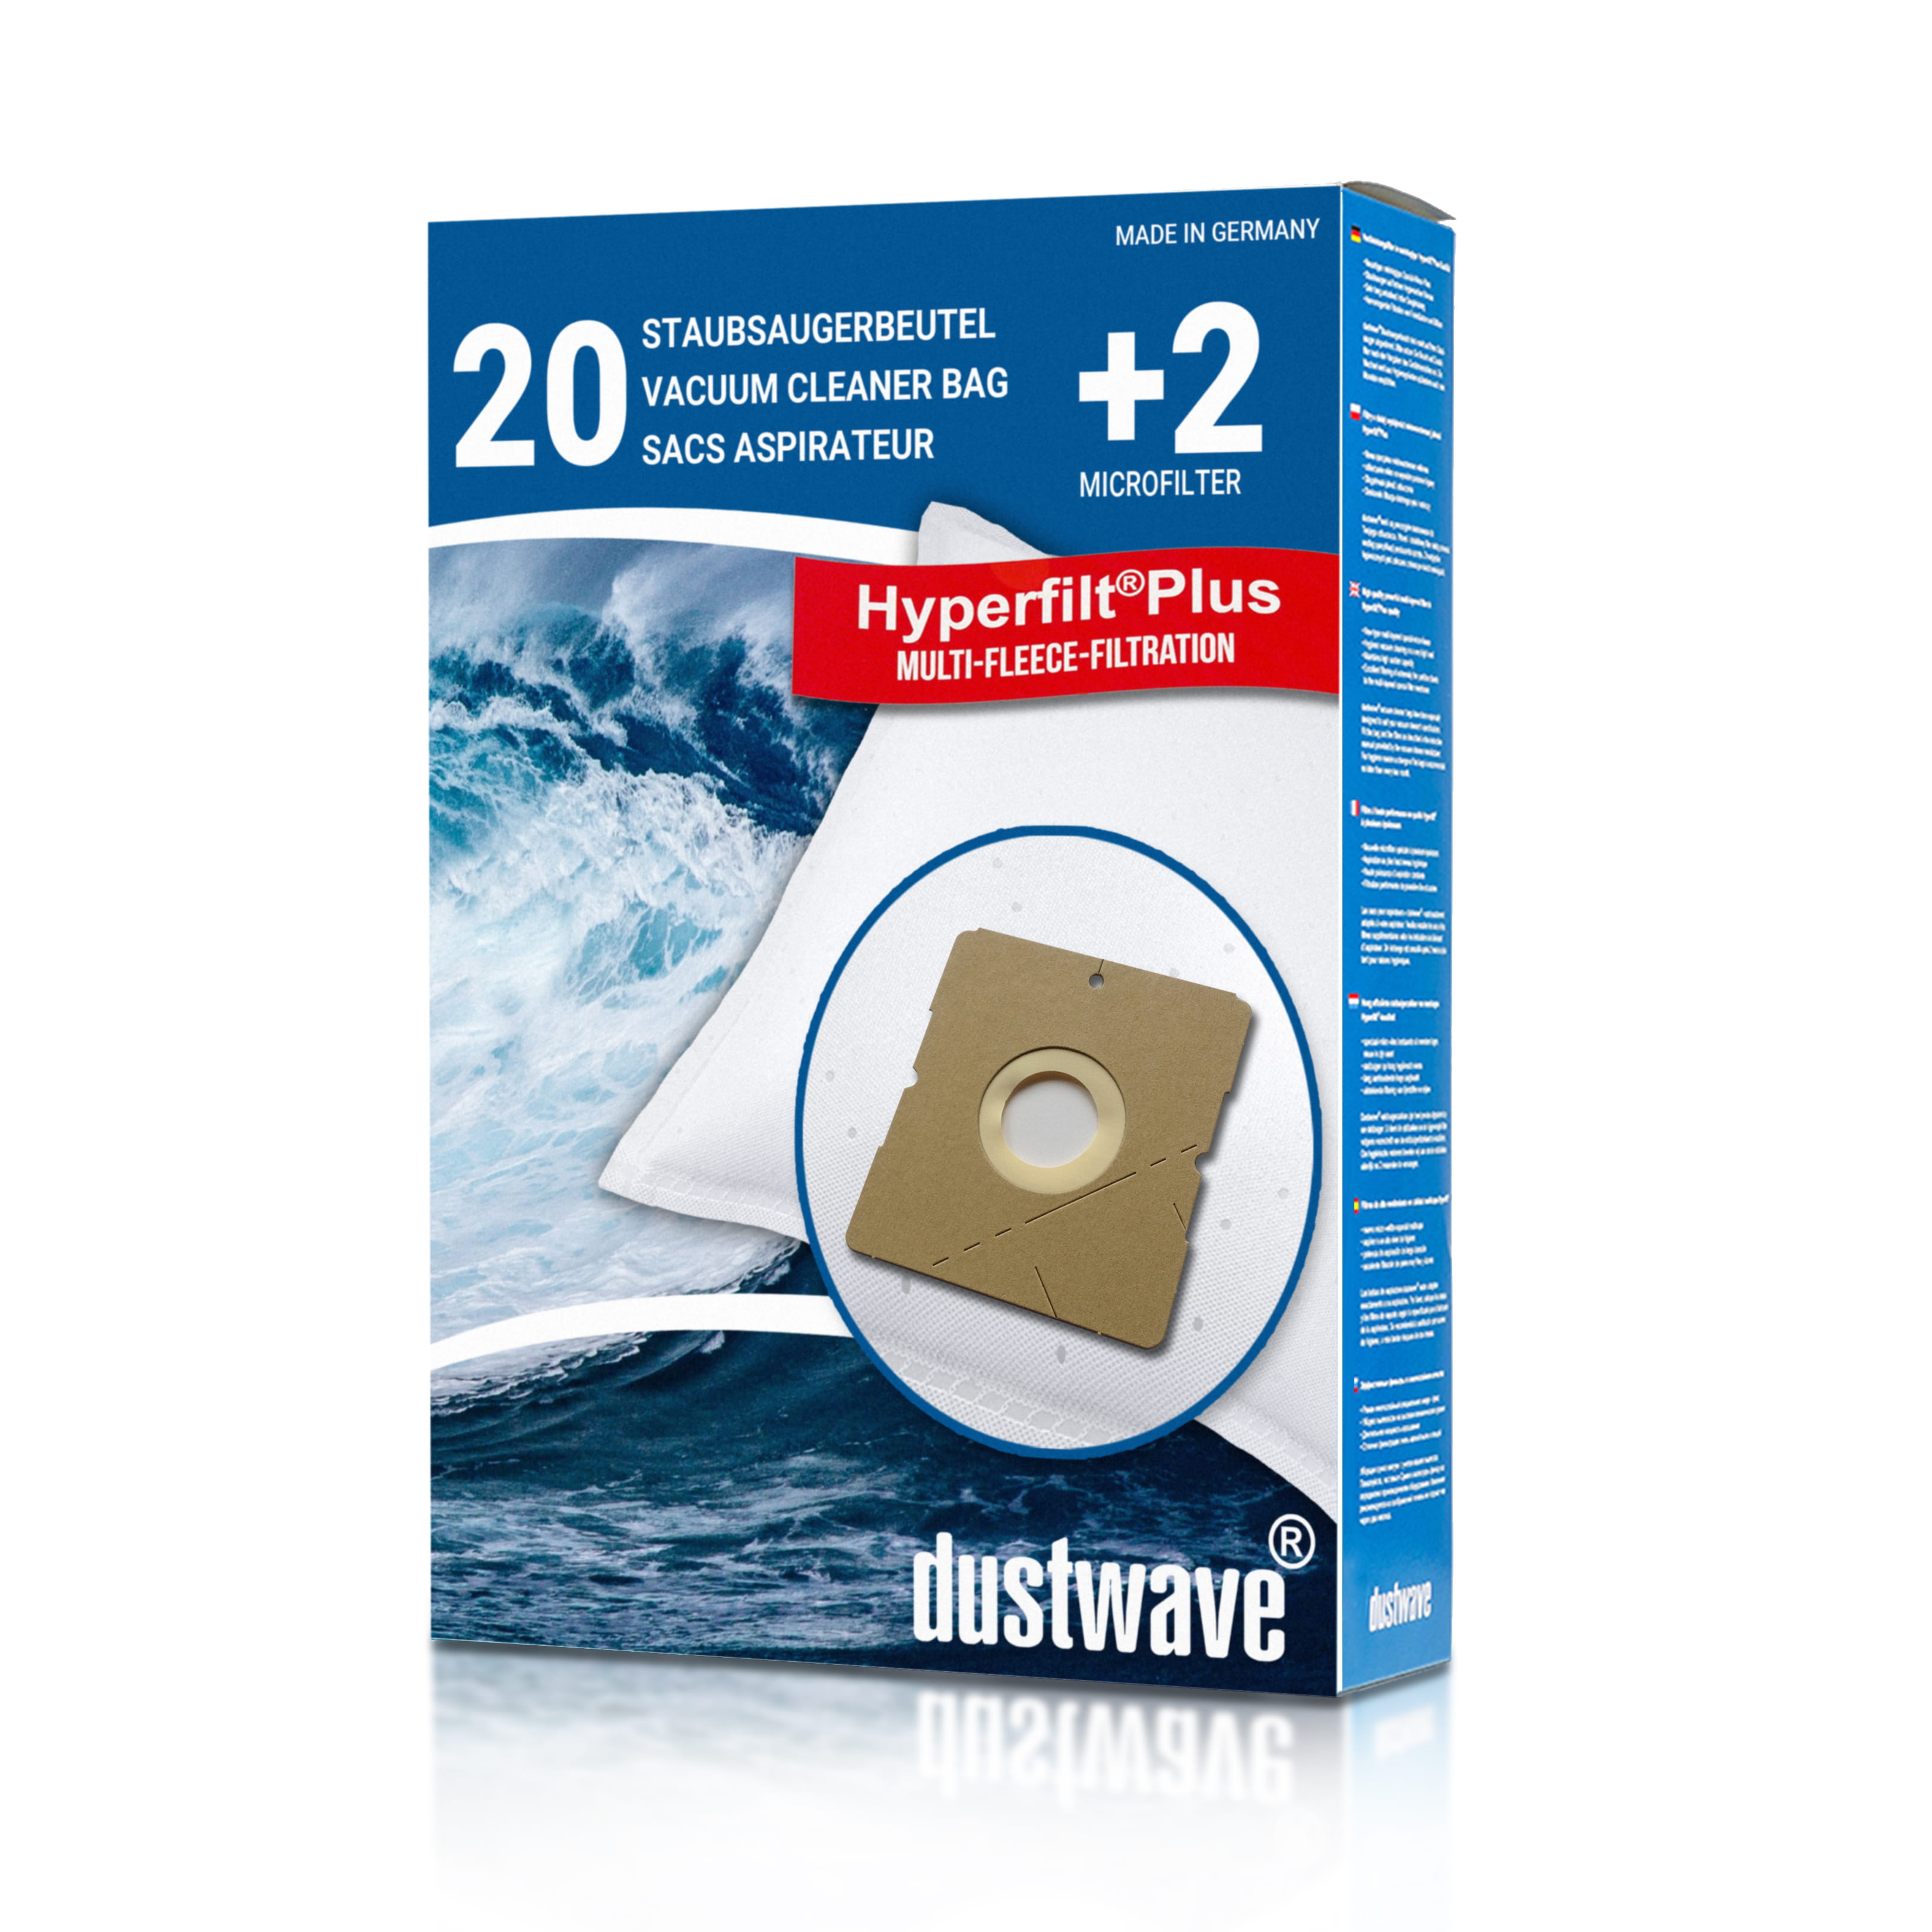 Dustwave® 20 Staubsaugerbeutel für AFK BS 1800 W 1 - hocheffizient, mehrlagiges Mikrovlies mit Hygieneverschluss - Made in Germany